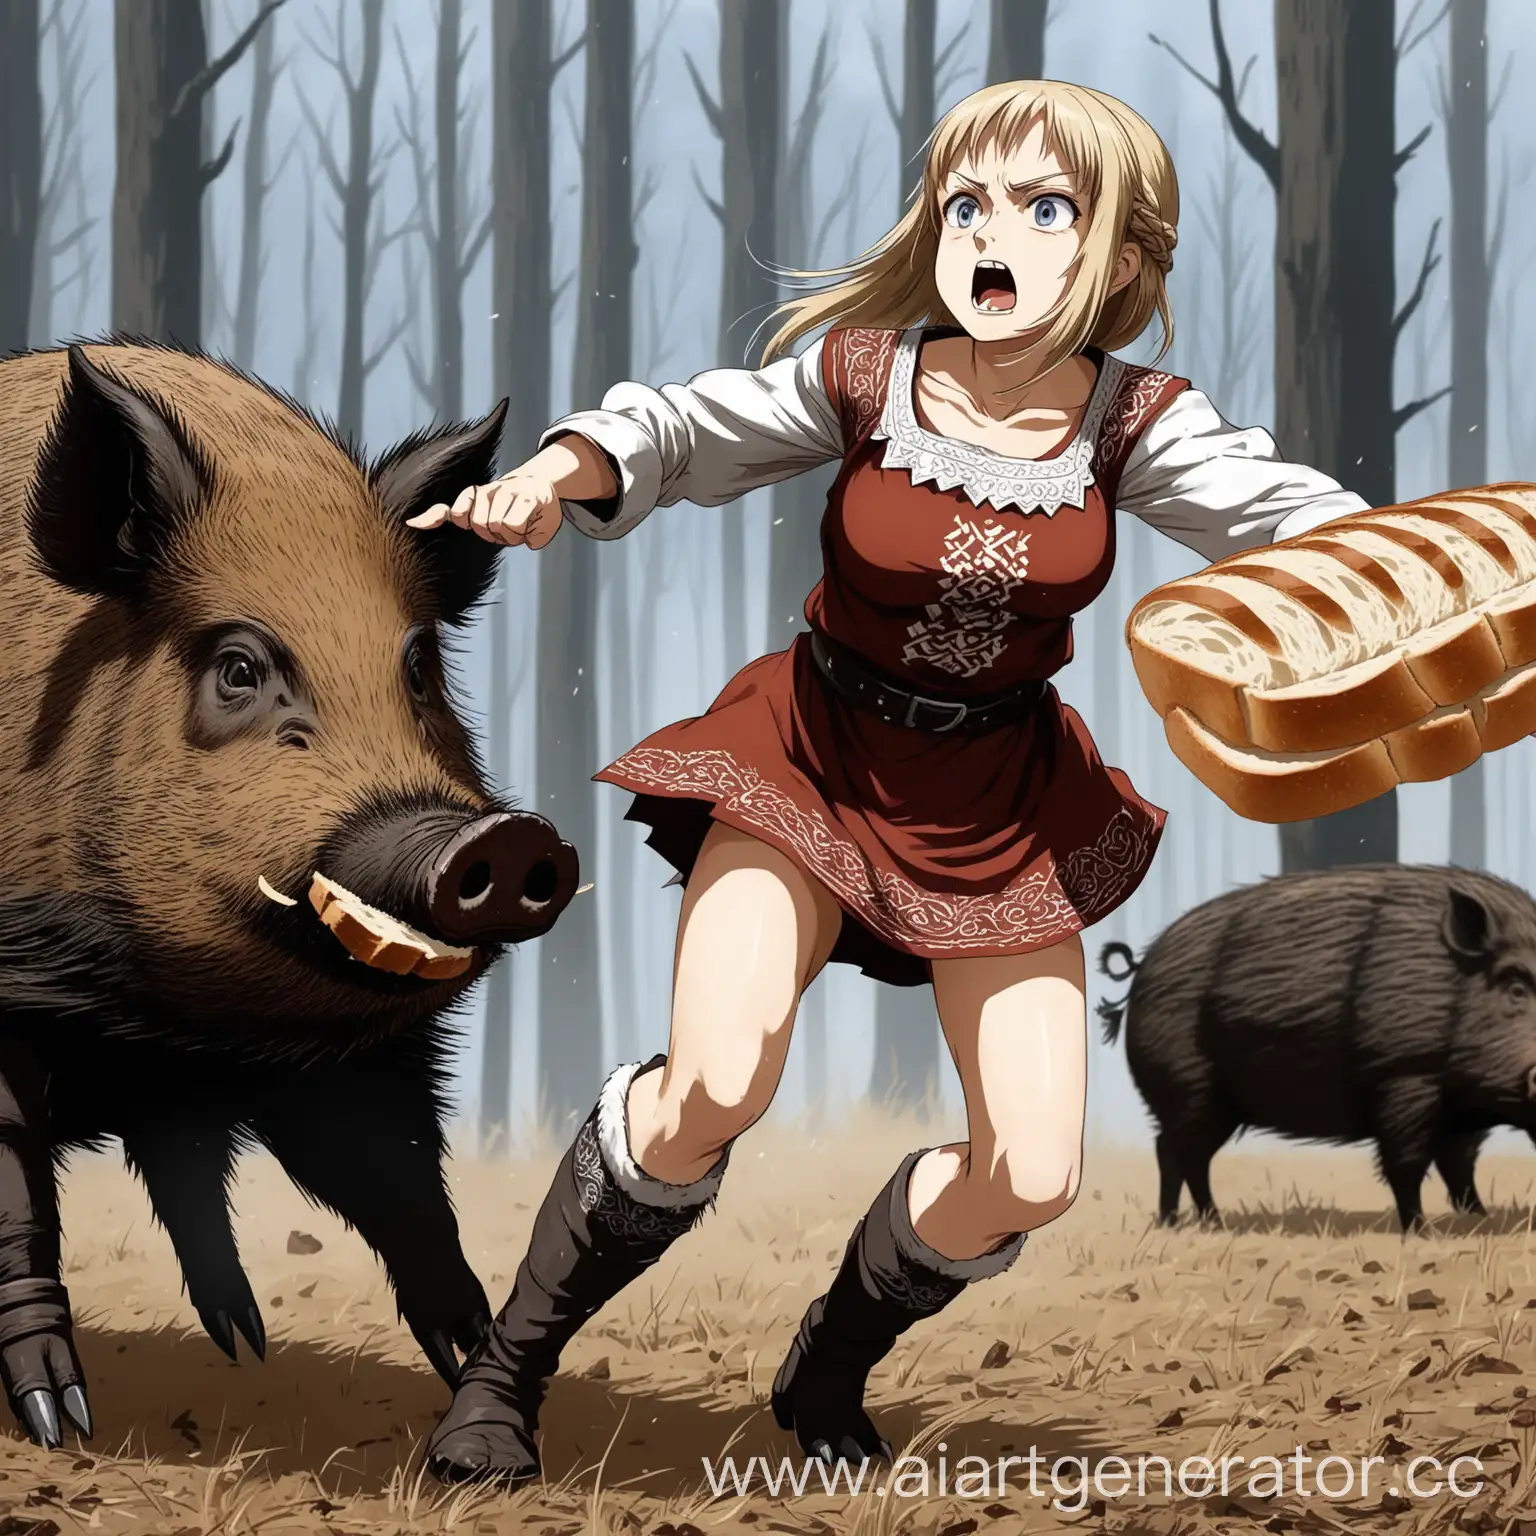 Brave-Slavic-Anime-Girl-Battles-Wild-Boar-for-Bread